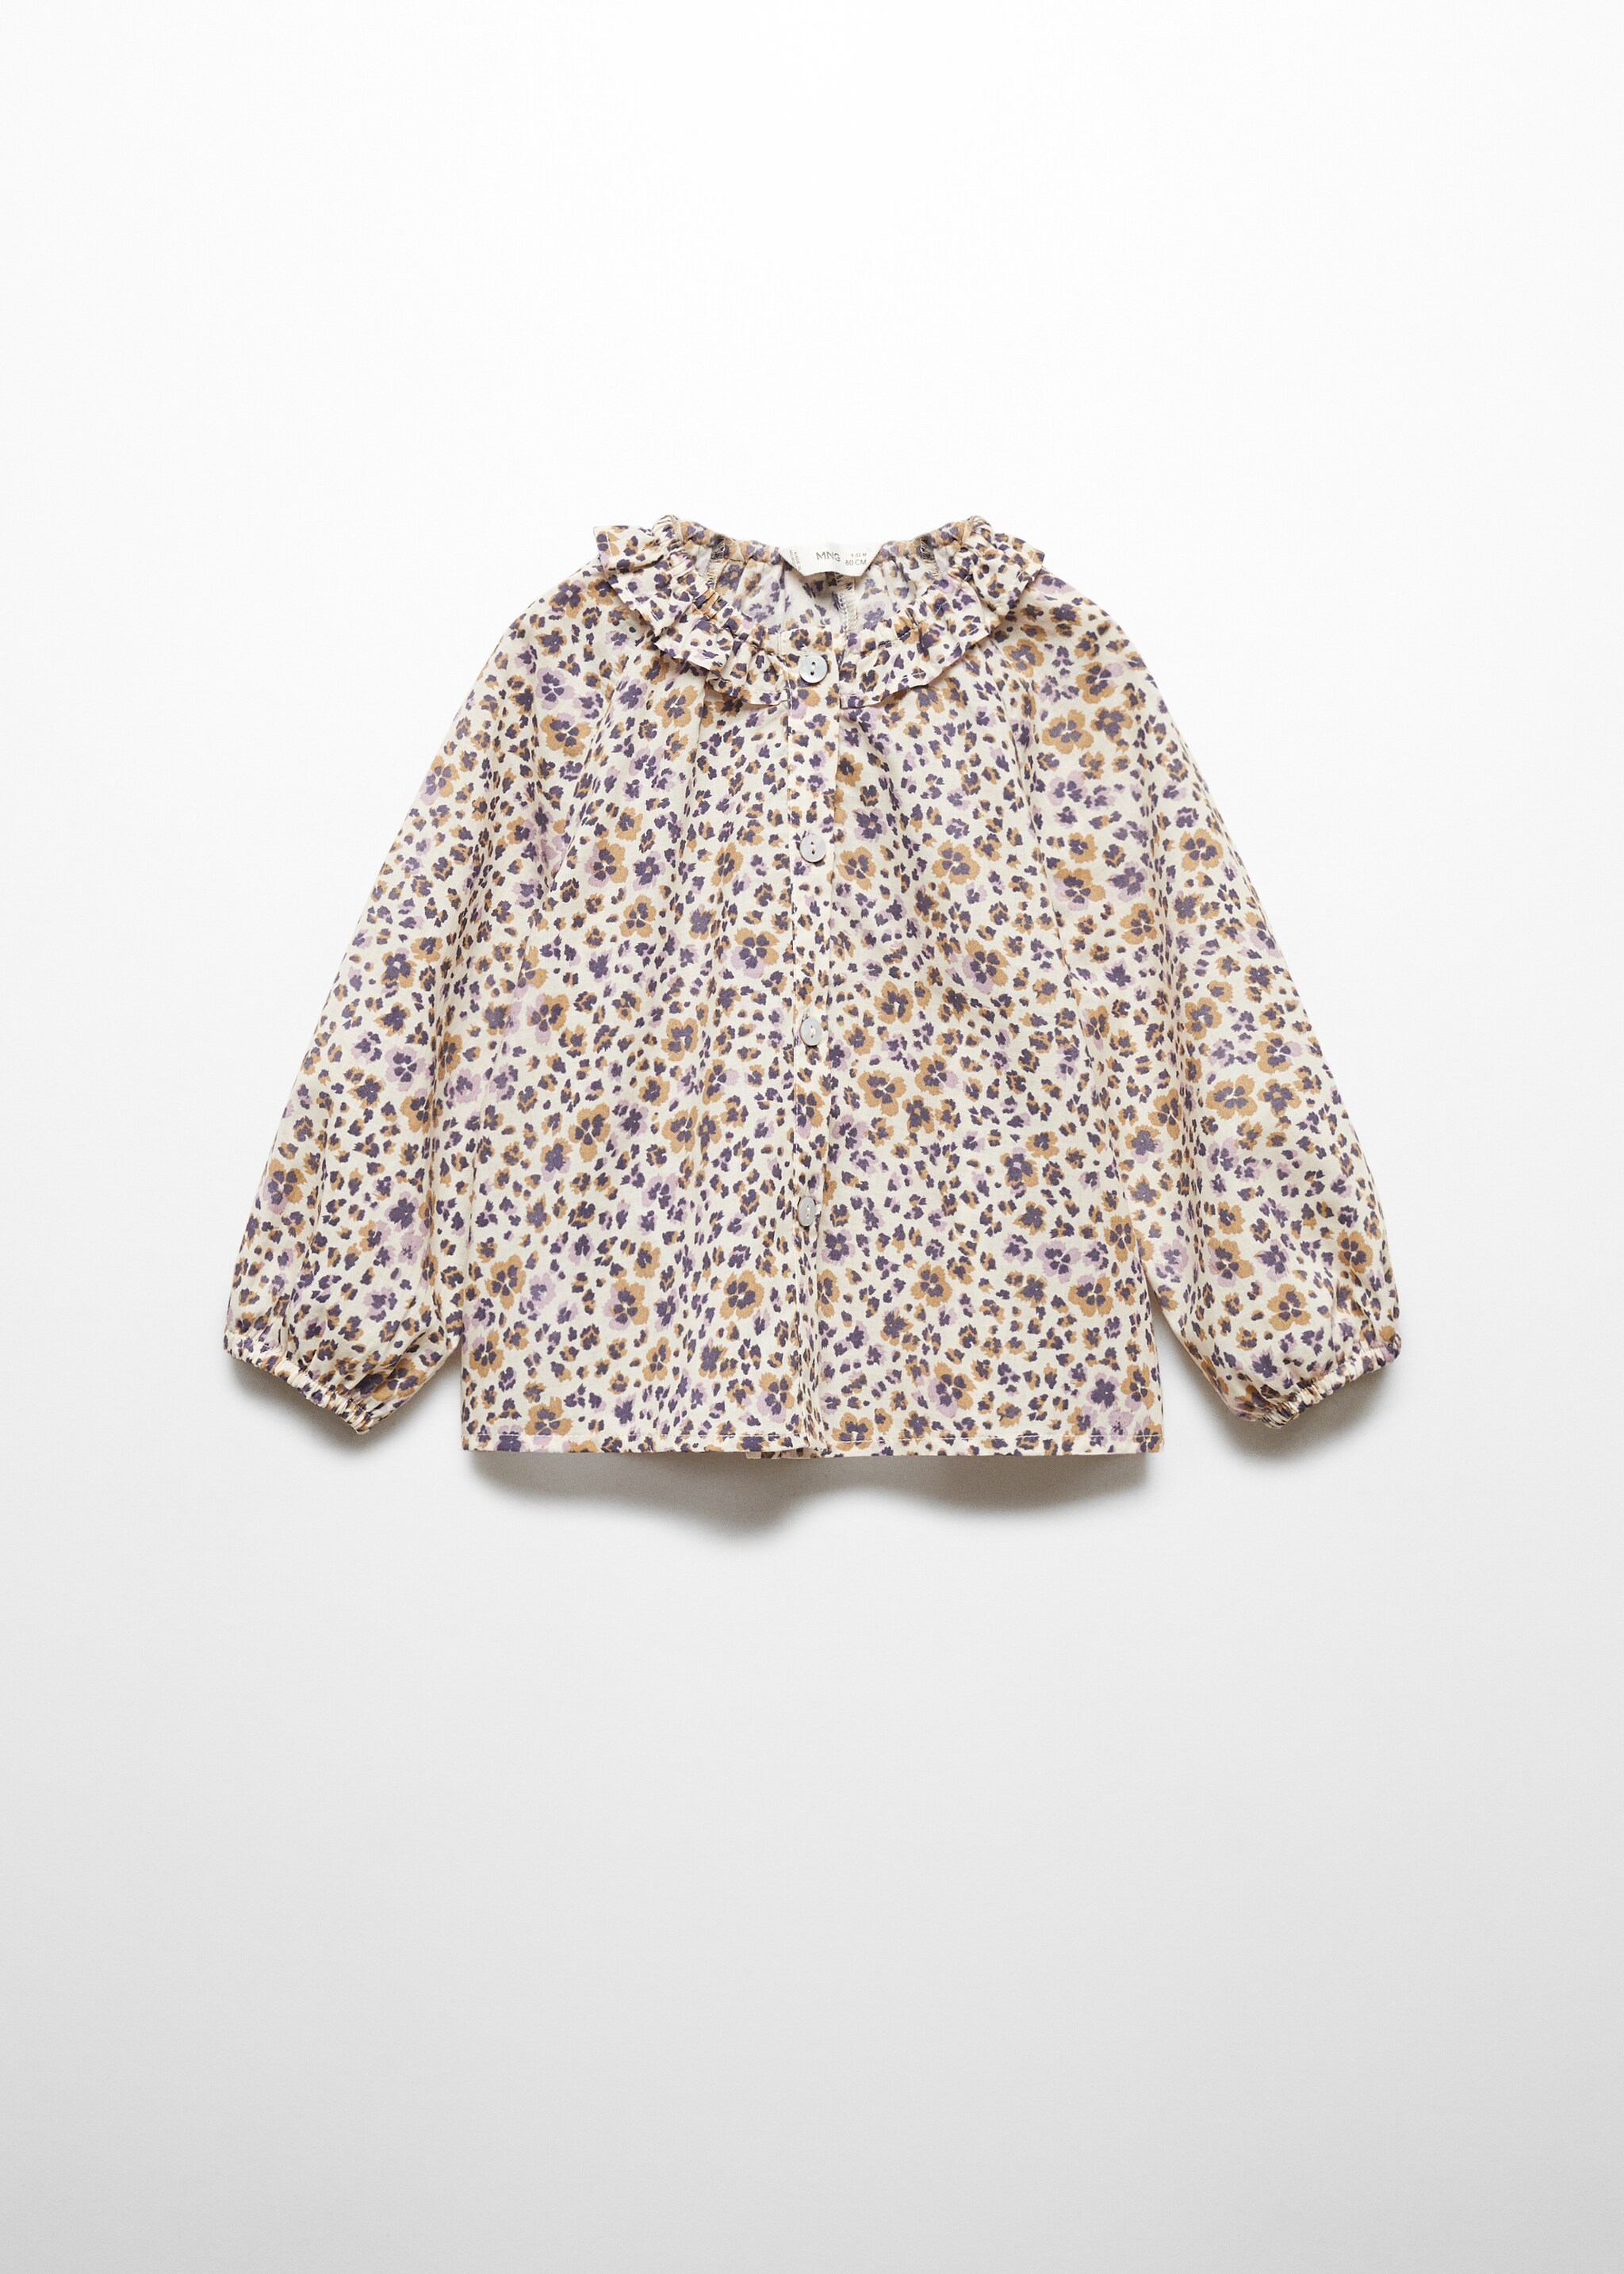 Блузка с цветочным принтом - Изделие без модели